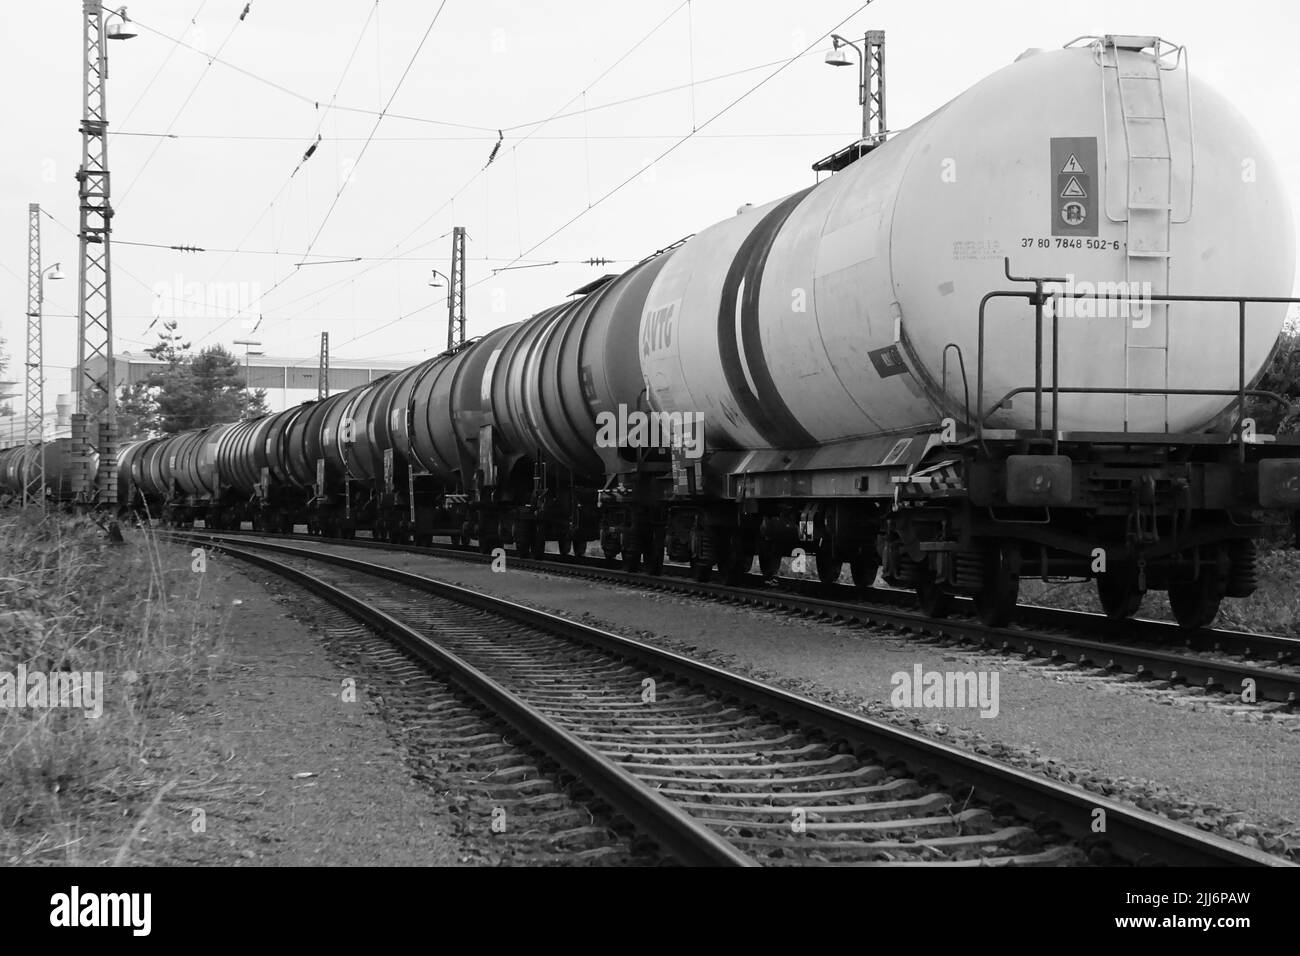 Vue en niveaux de gris du train de marchandises avec les wagons-citernes à huile Banque D'Images